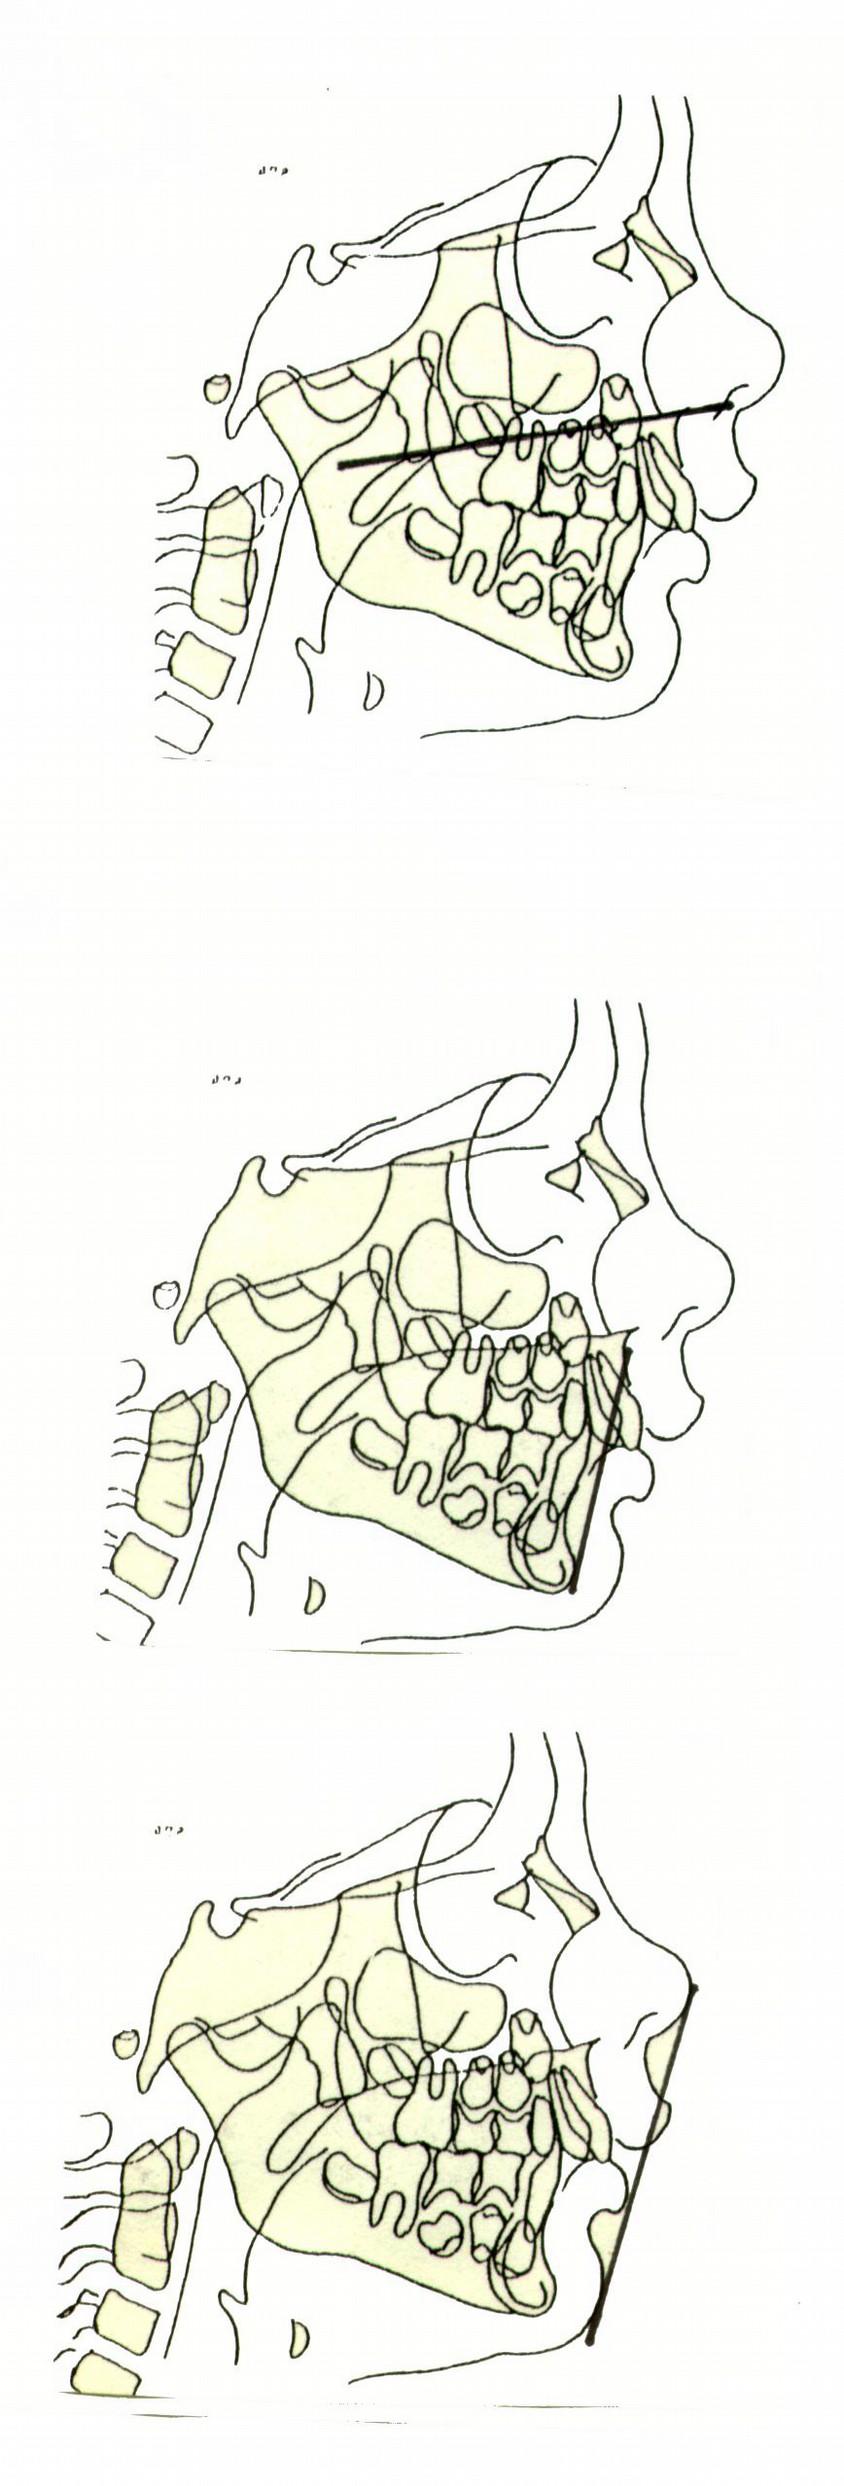 PLANO PALATINO ENA - ENP El plano palatino une la espina nasal anterior y posterior.